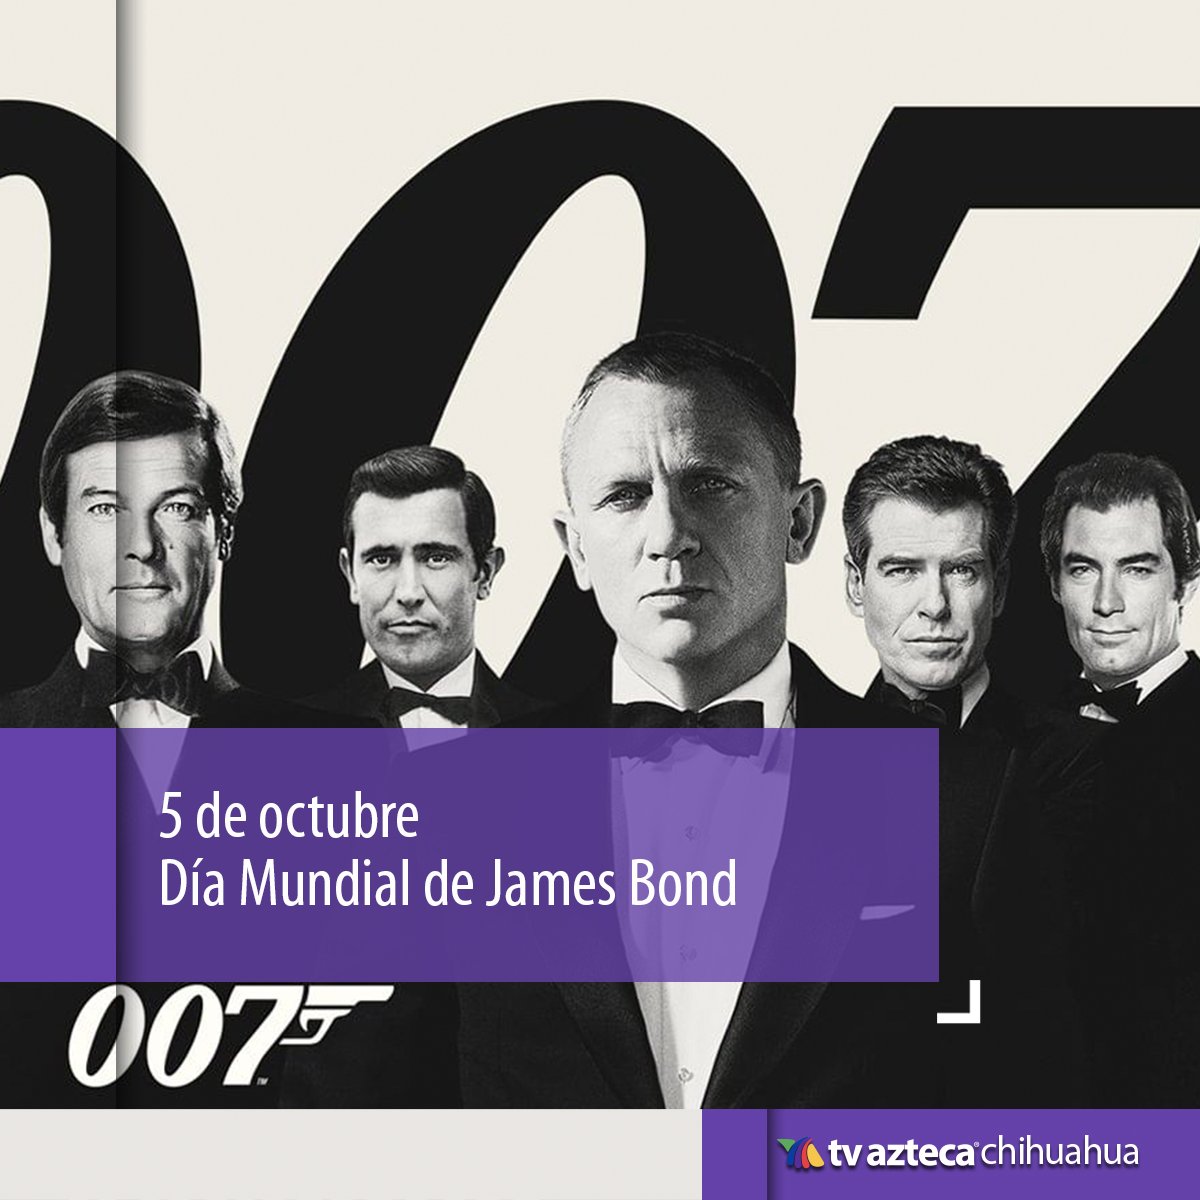 '¡ALERTA AGENTE 007!' 🍸 Hoy celebramos el día de James Bond 
. 
¡Aquí te decimos por qué! 👇acortar.link/KMXN6P
#007Bond #007Movie